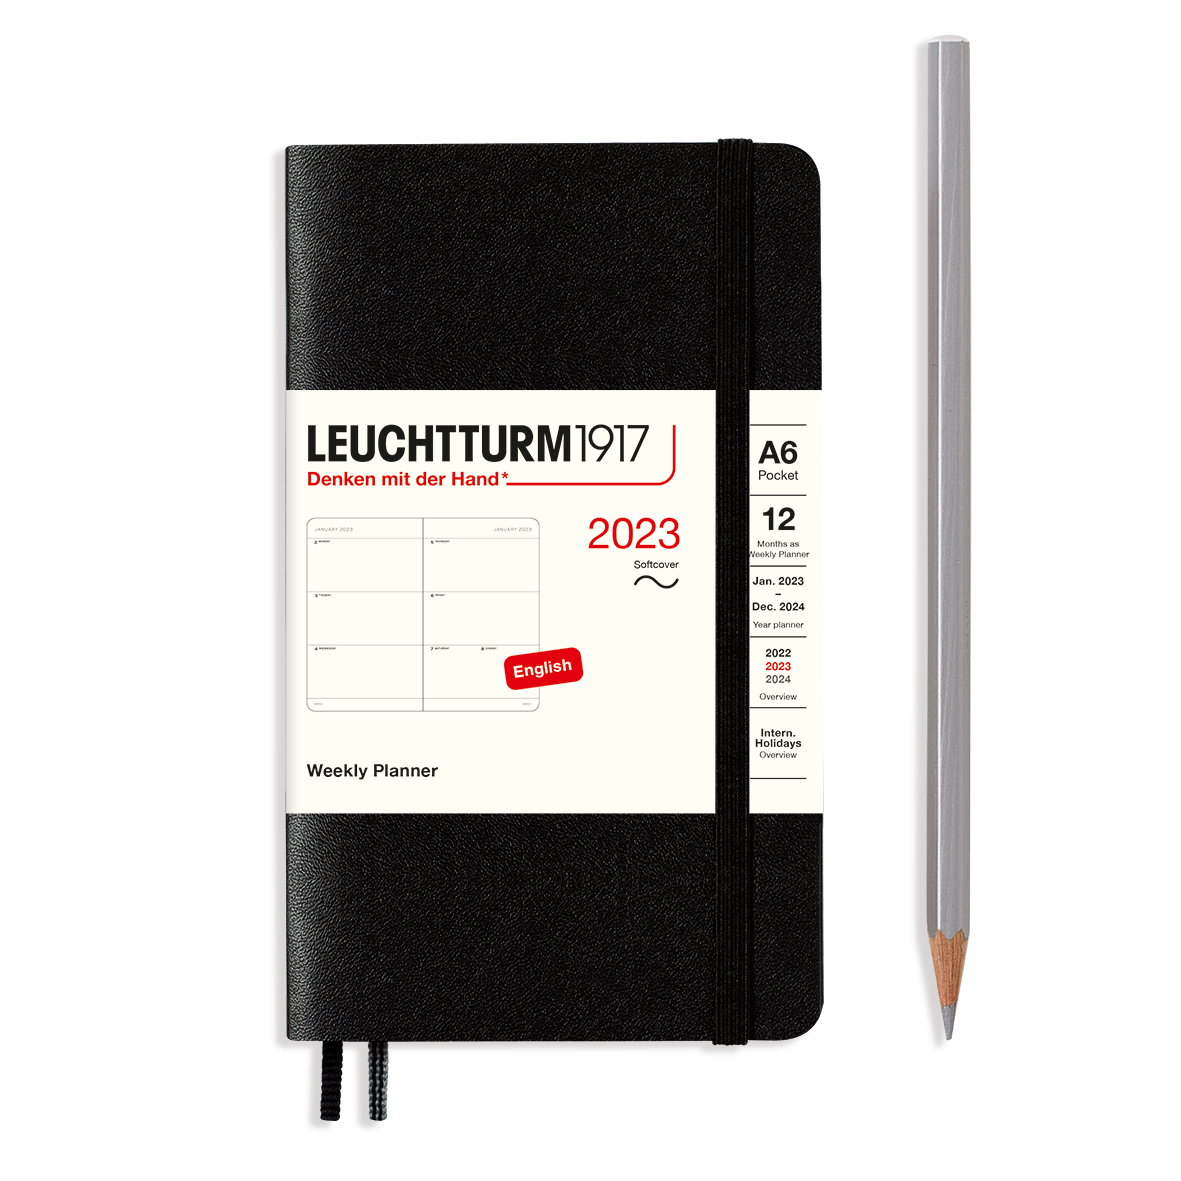 Еженедельник датир. Leuchtturm1917 Pocket A6 на 2023г, дни без расписания, м. обл, цвет: Черный Lecht-365972